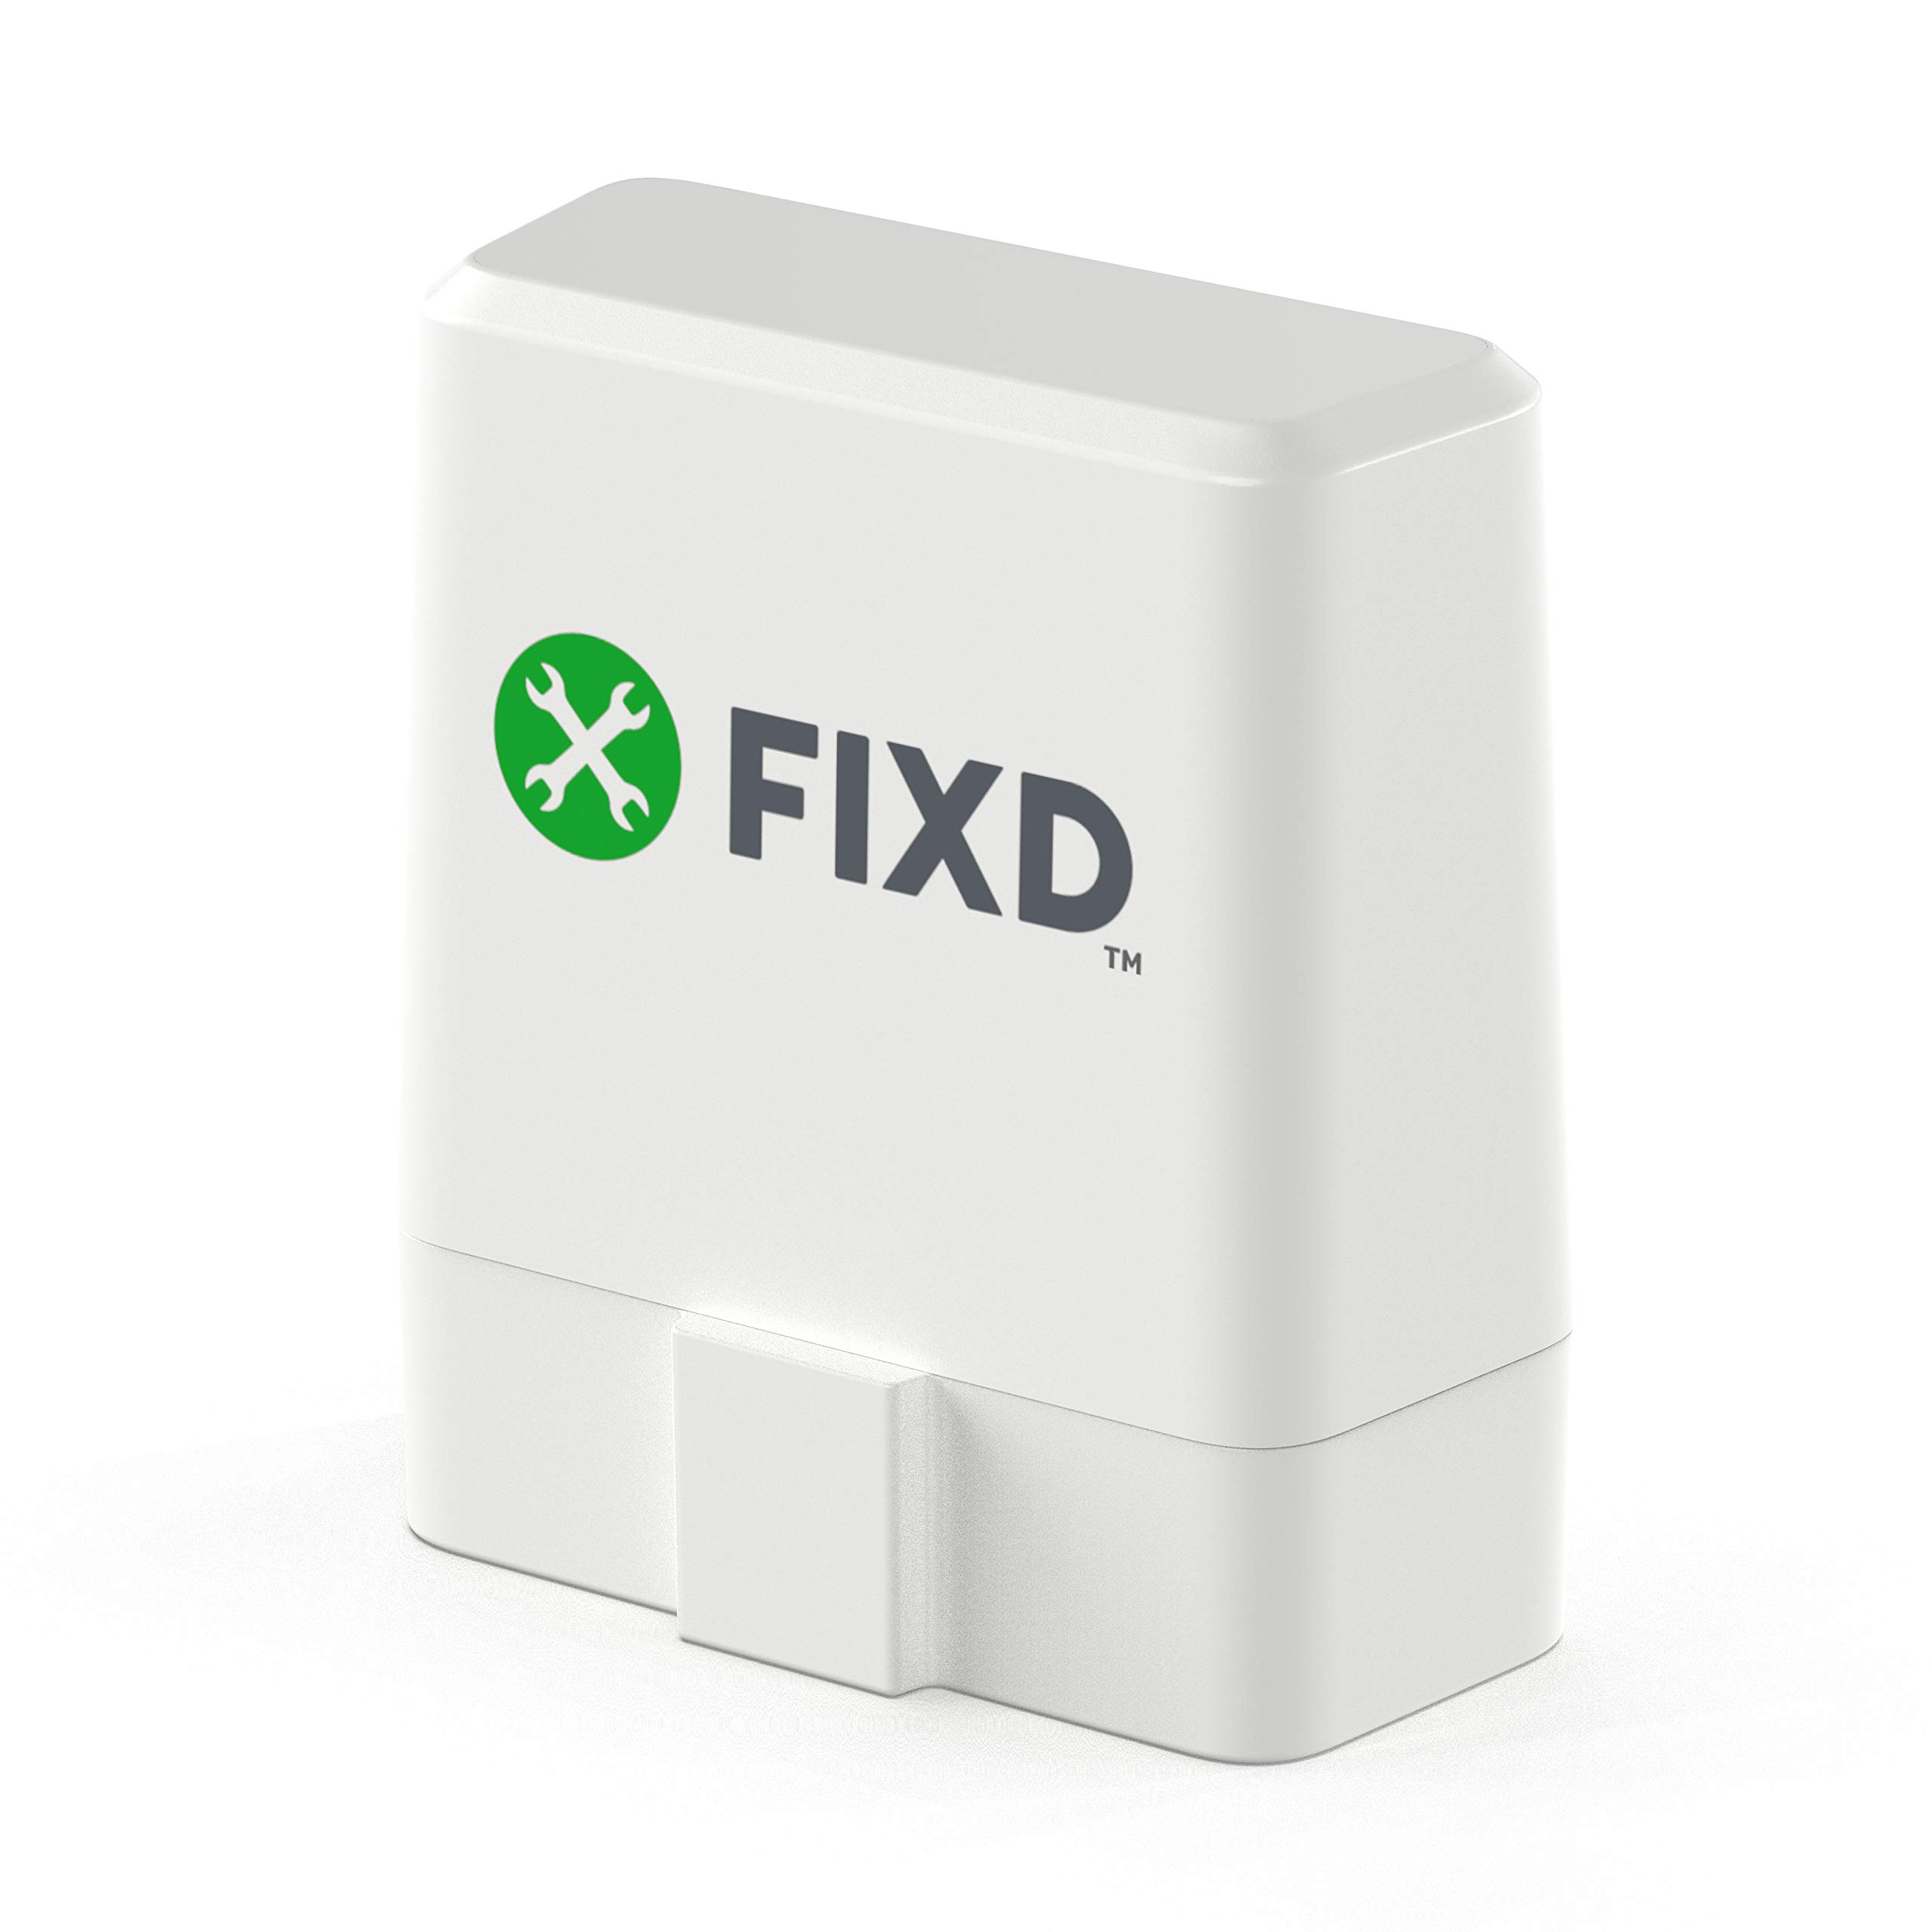  FIXD Skaner Bluetooth OBD2 do samochodu - Czytniki kodów samochodowych i narzędzia skanujące dla iPhone'a i Androida - Bezprzewodowe narzędzie diagnostyczne OBD2 do sprawdzania silnika i naprawiania...